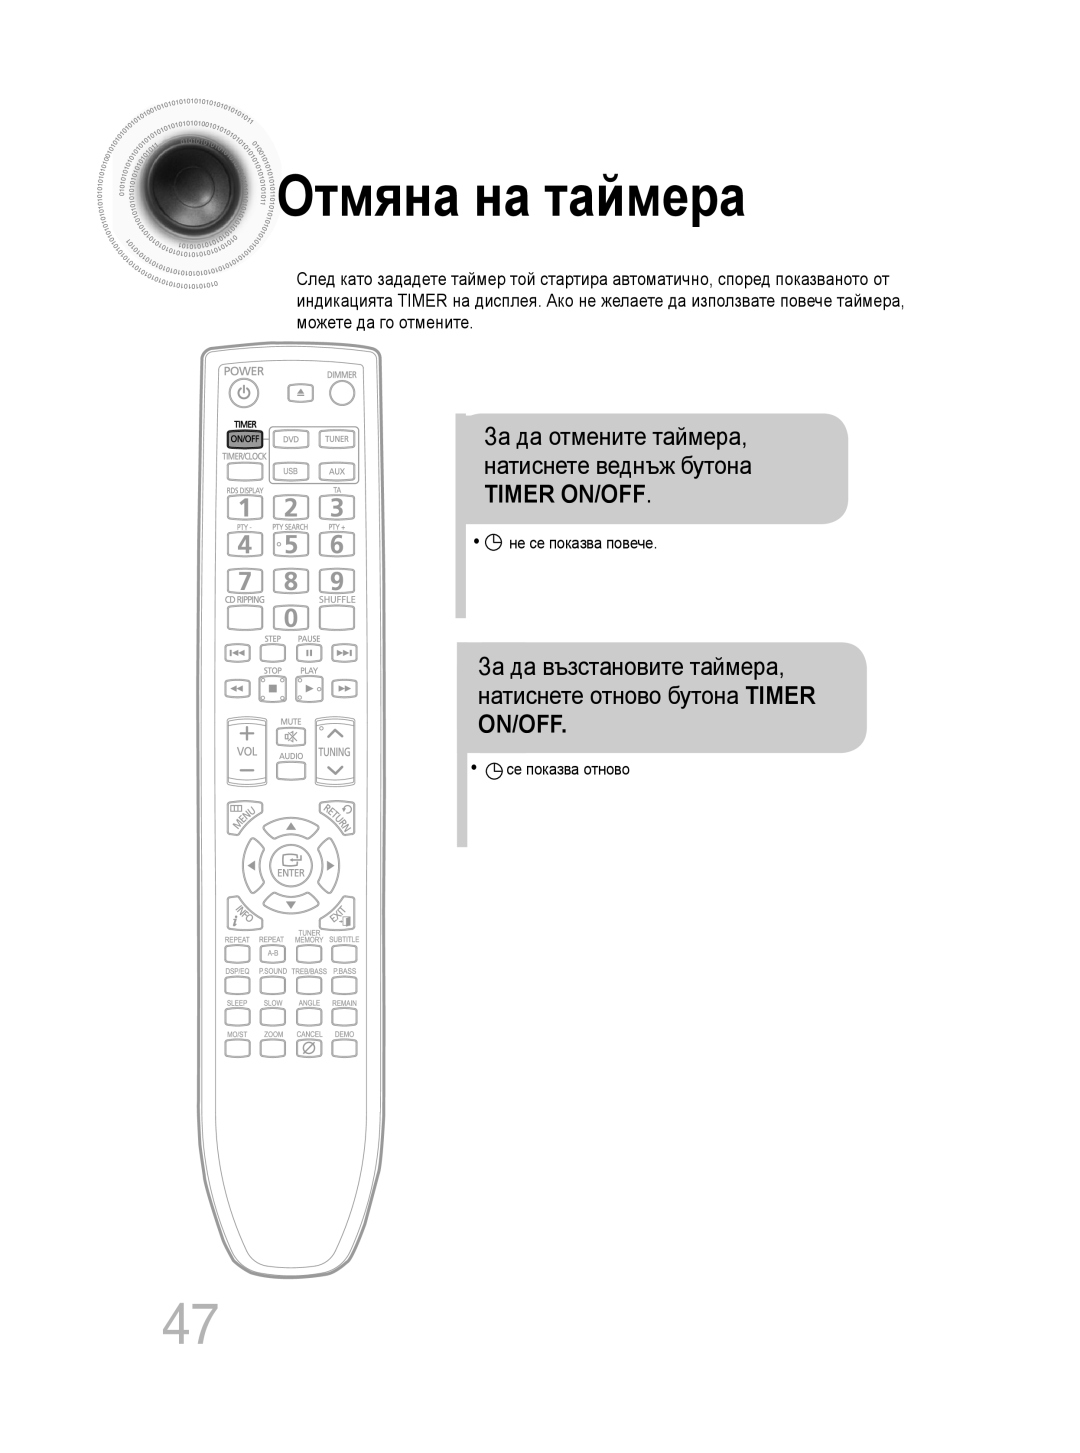 Samsung MM-C330D/EDC manual Отмяна на таймера, Timer On/Off, За да отмените таймера, натиснете веднъж бутона 